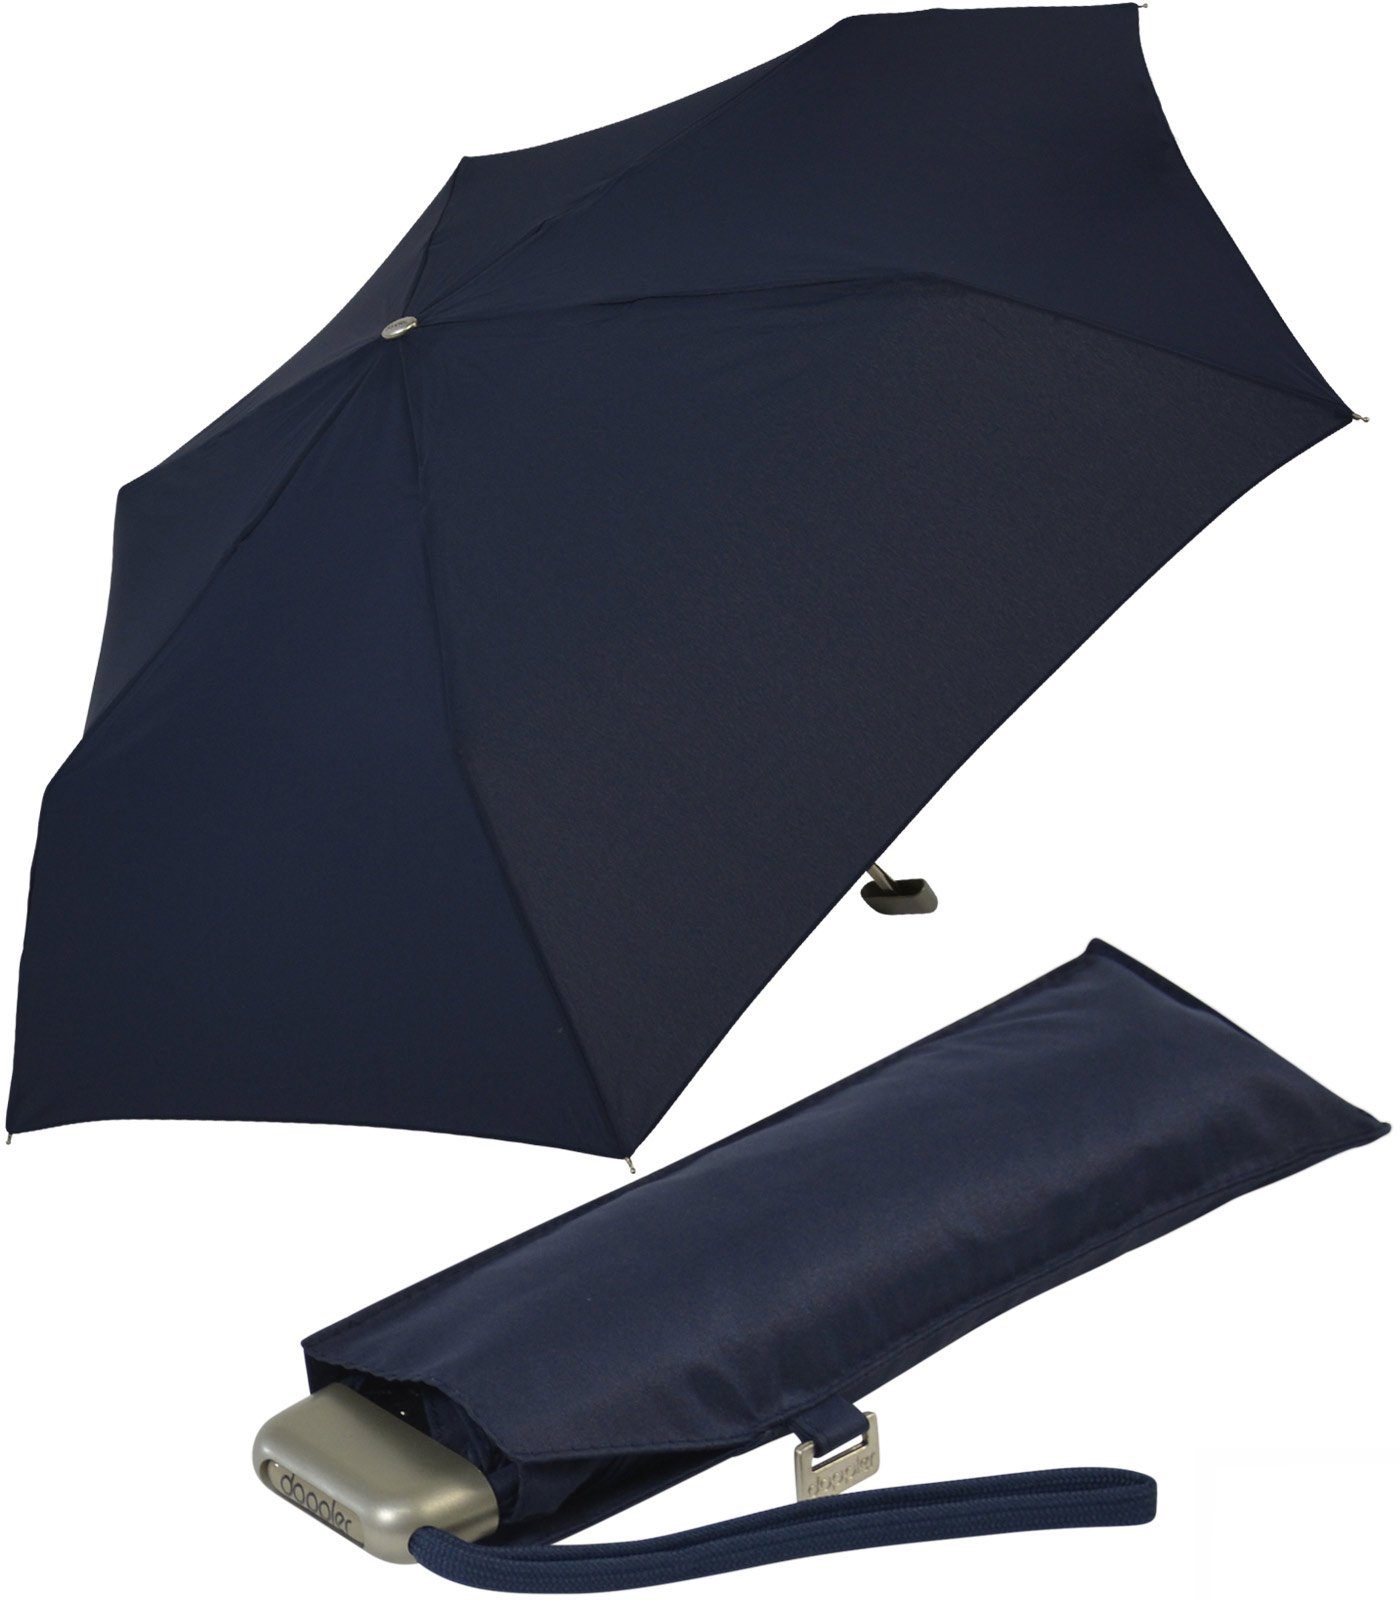 und Platz für treue jede navy findet Tasche, Begleiter leichter ein doppler® dieser Schirm überall flacher Langregenschirm